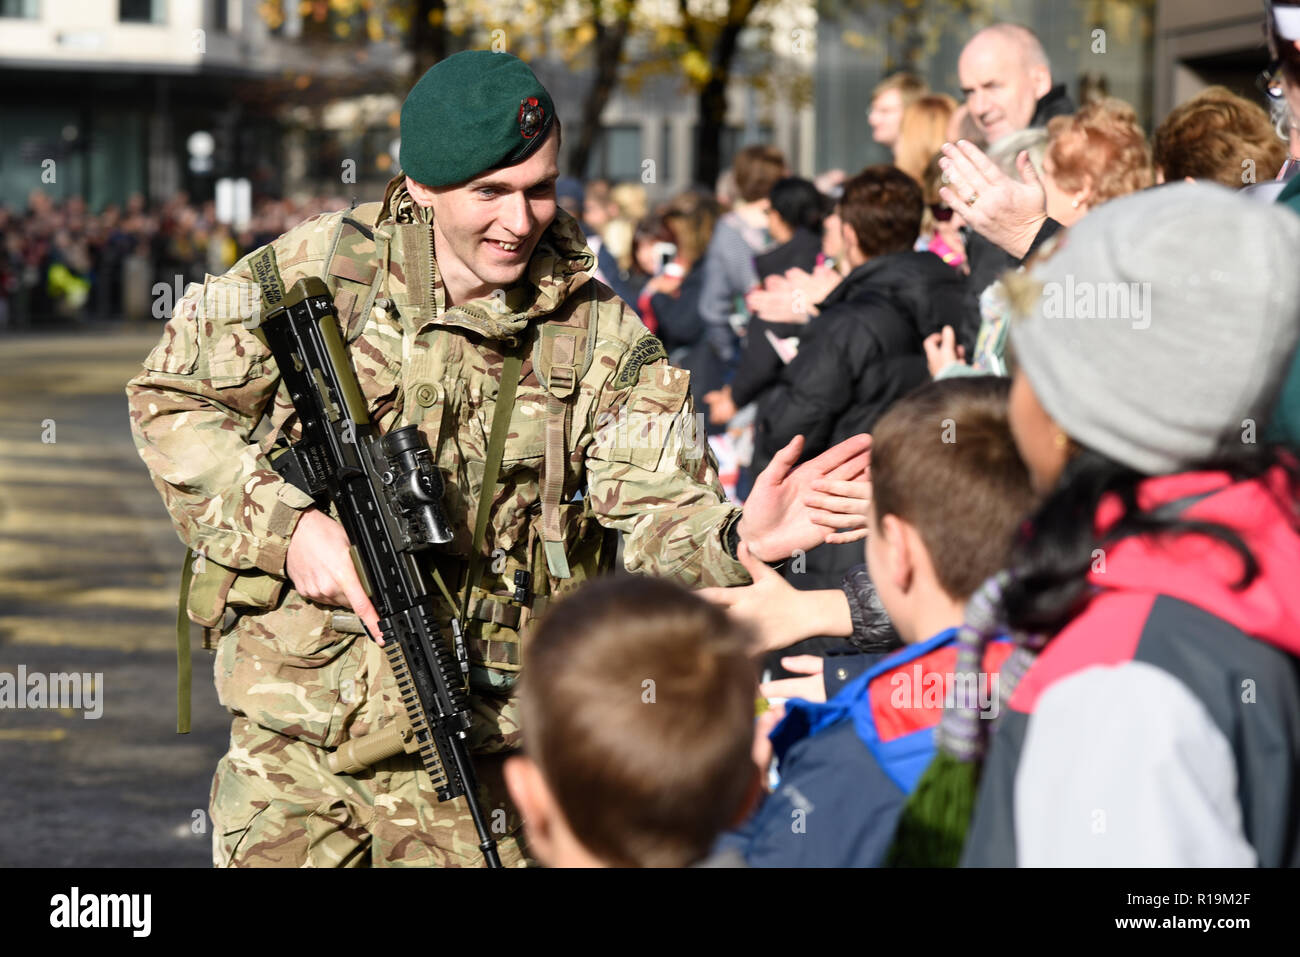 Réserver Royal Marines (City of London) Interaction avec les enfants dans la foule dans le Seigneur Mayor's Show Parade 2018. London, UK Banque D'Images